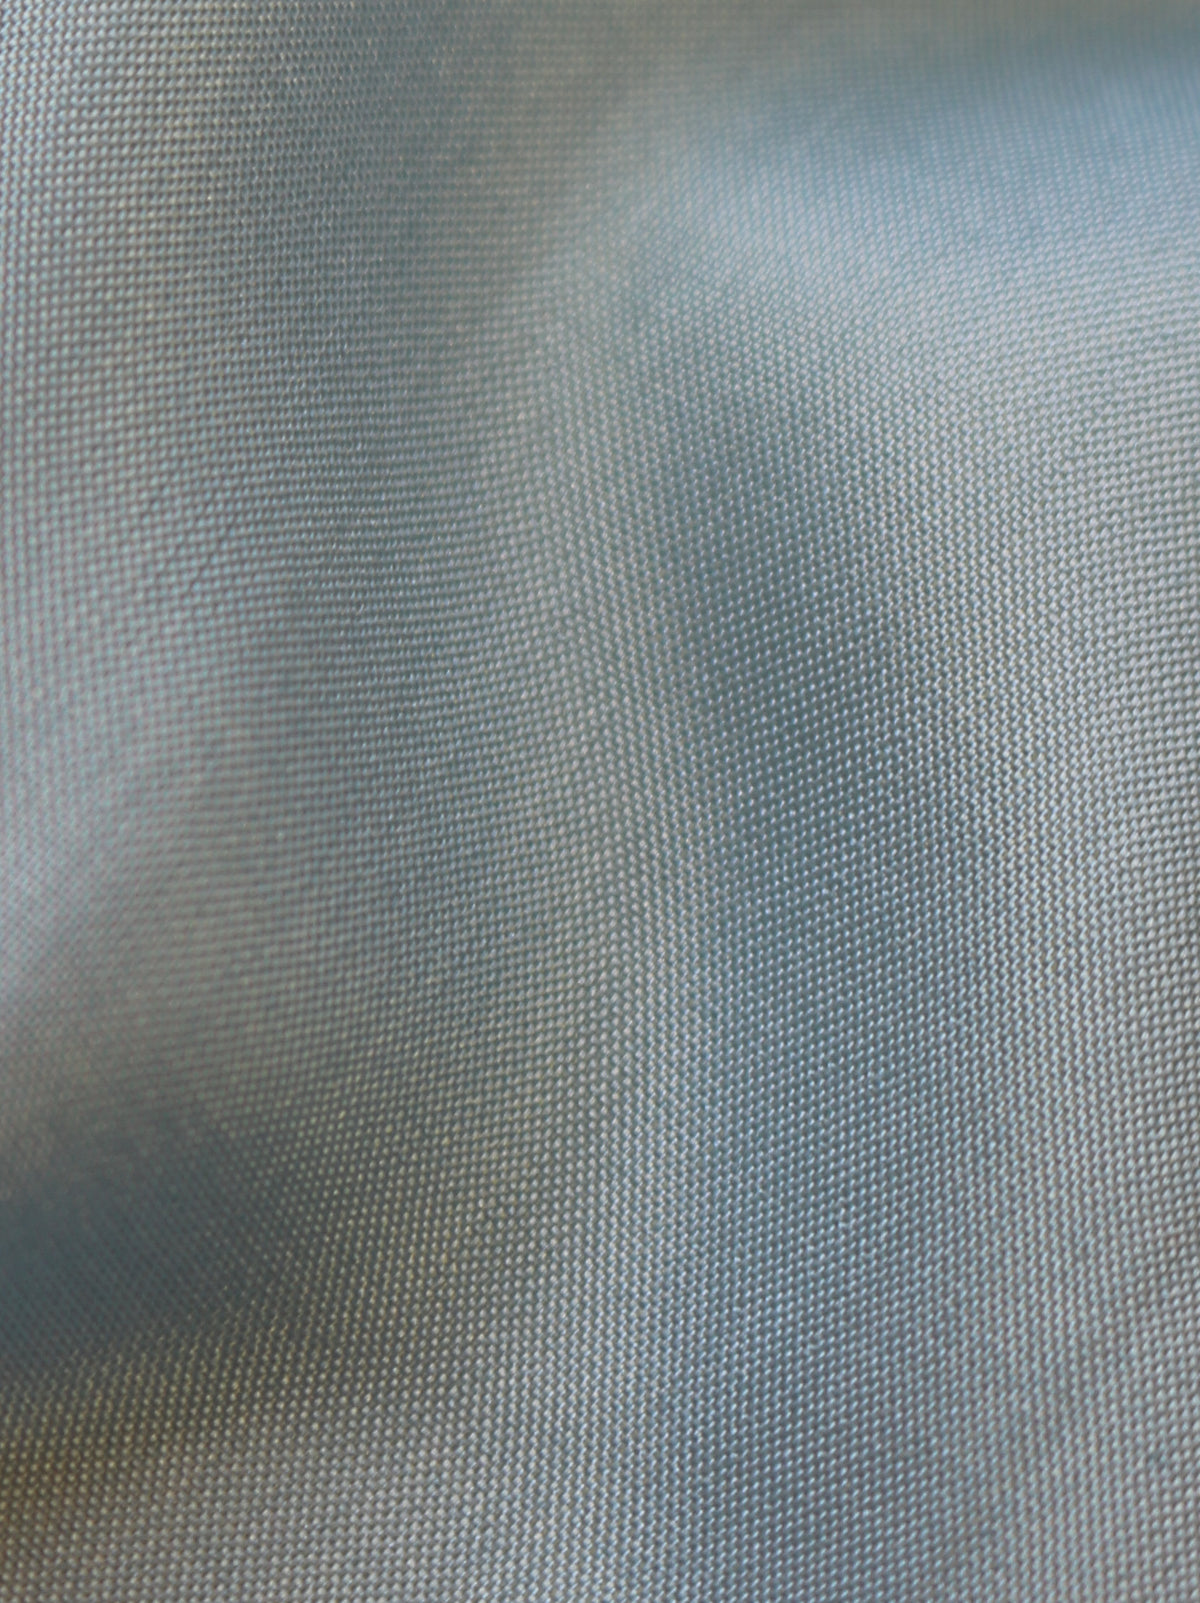 Habotai en soie bleu ciel - Mosaïque